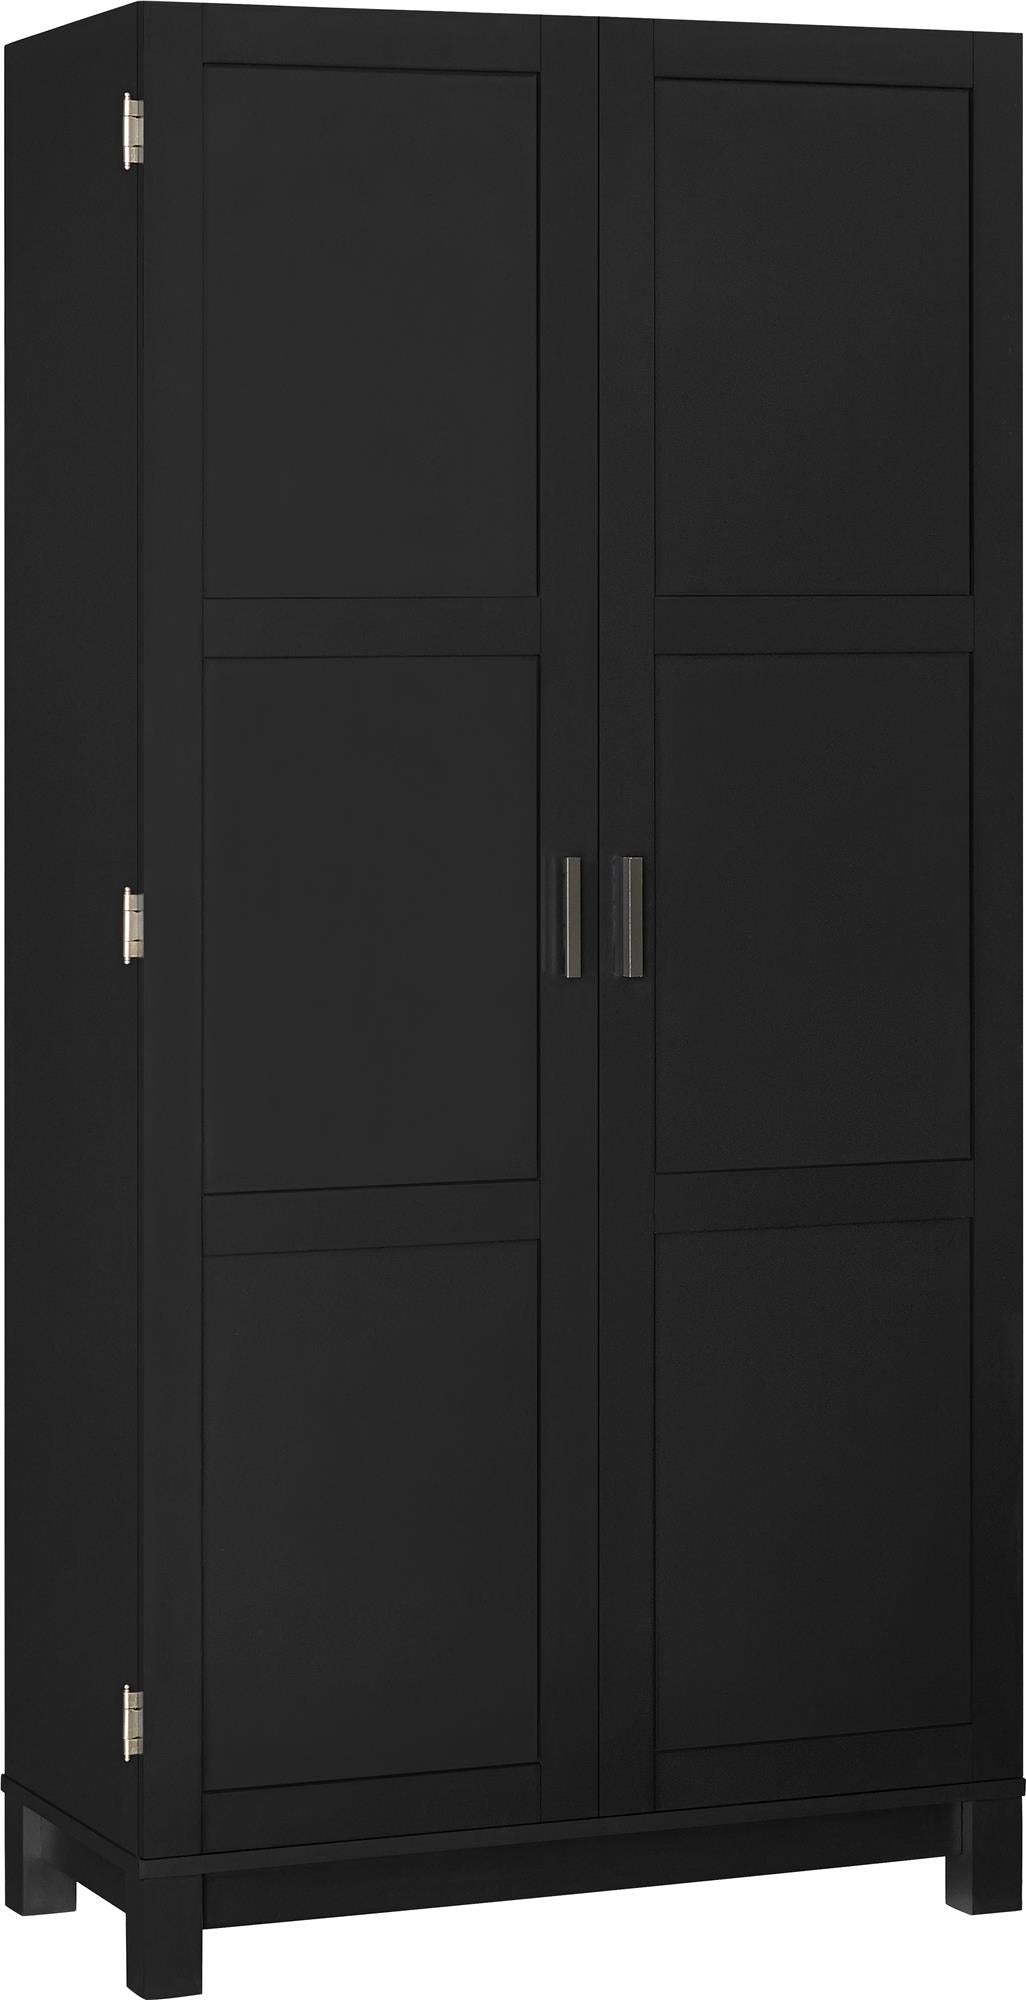 Spacious storage with Carver's 6 shelf design -  Black